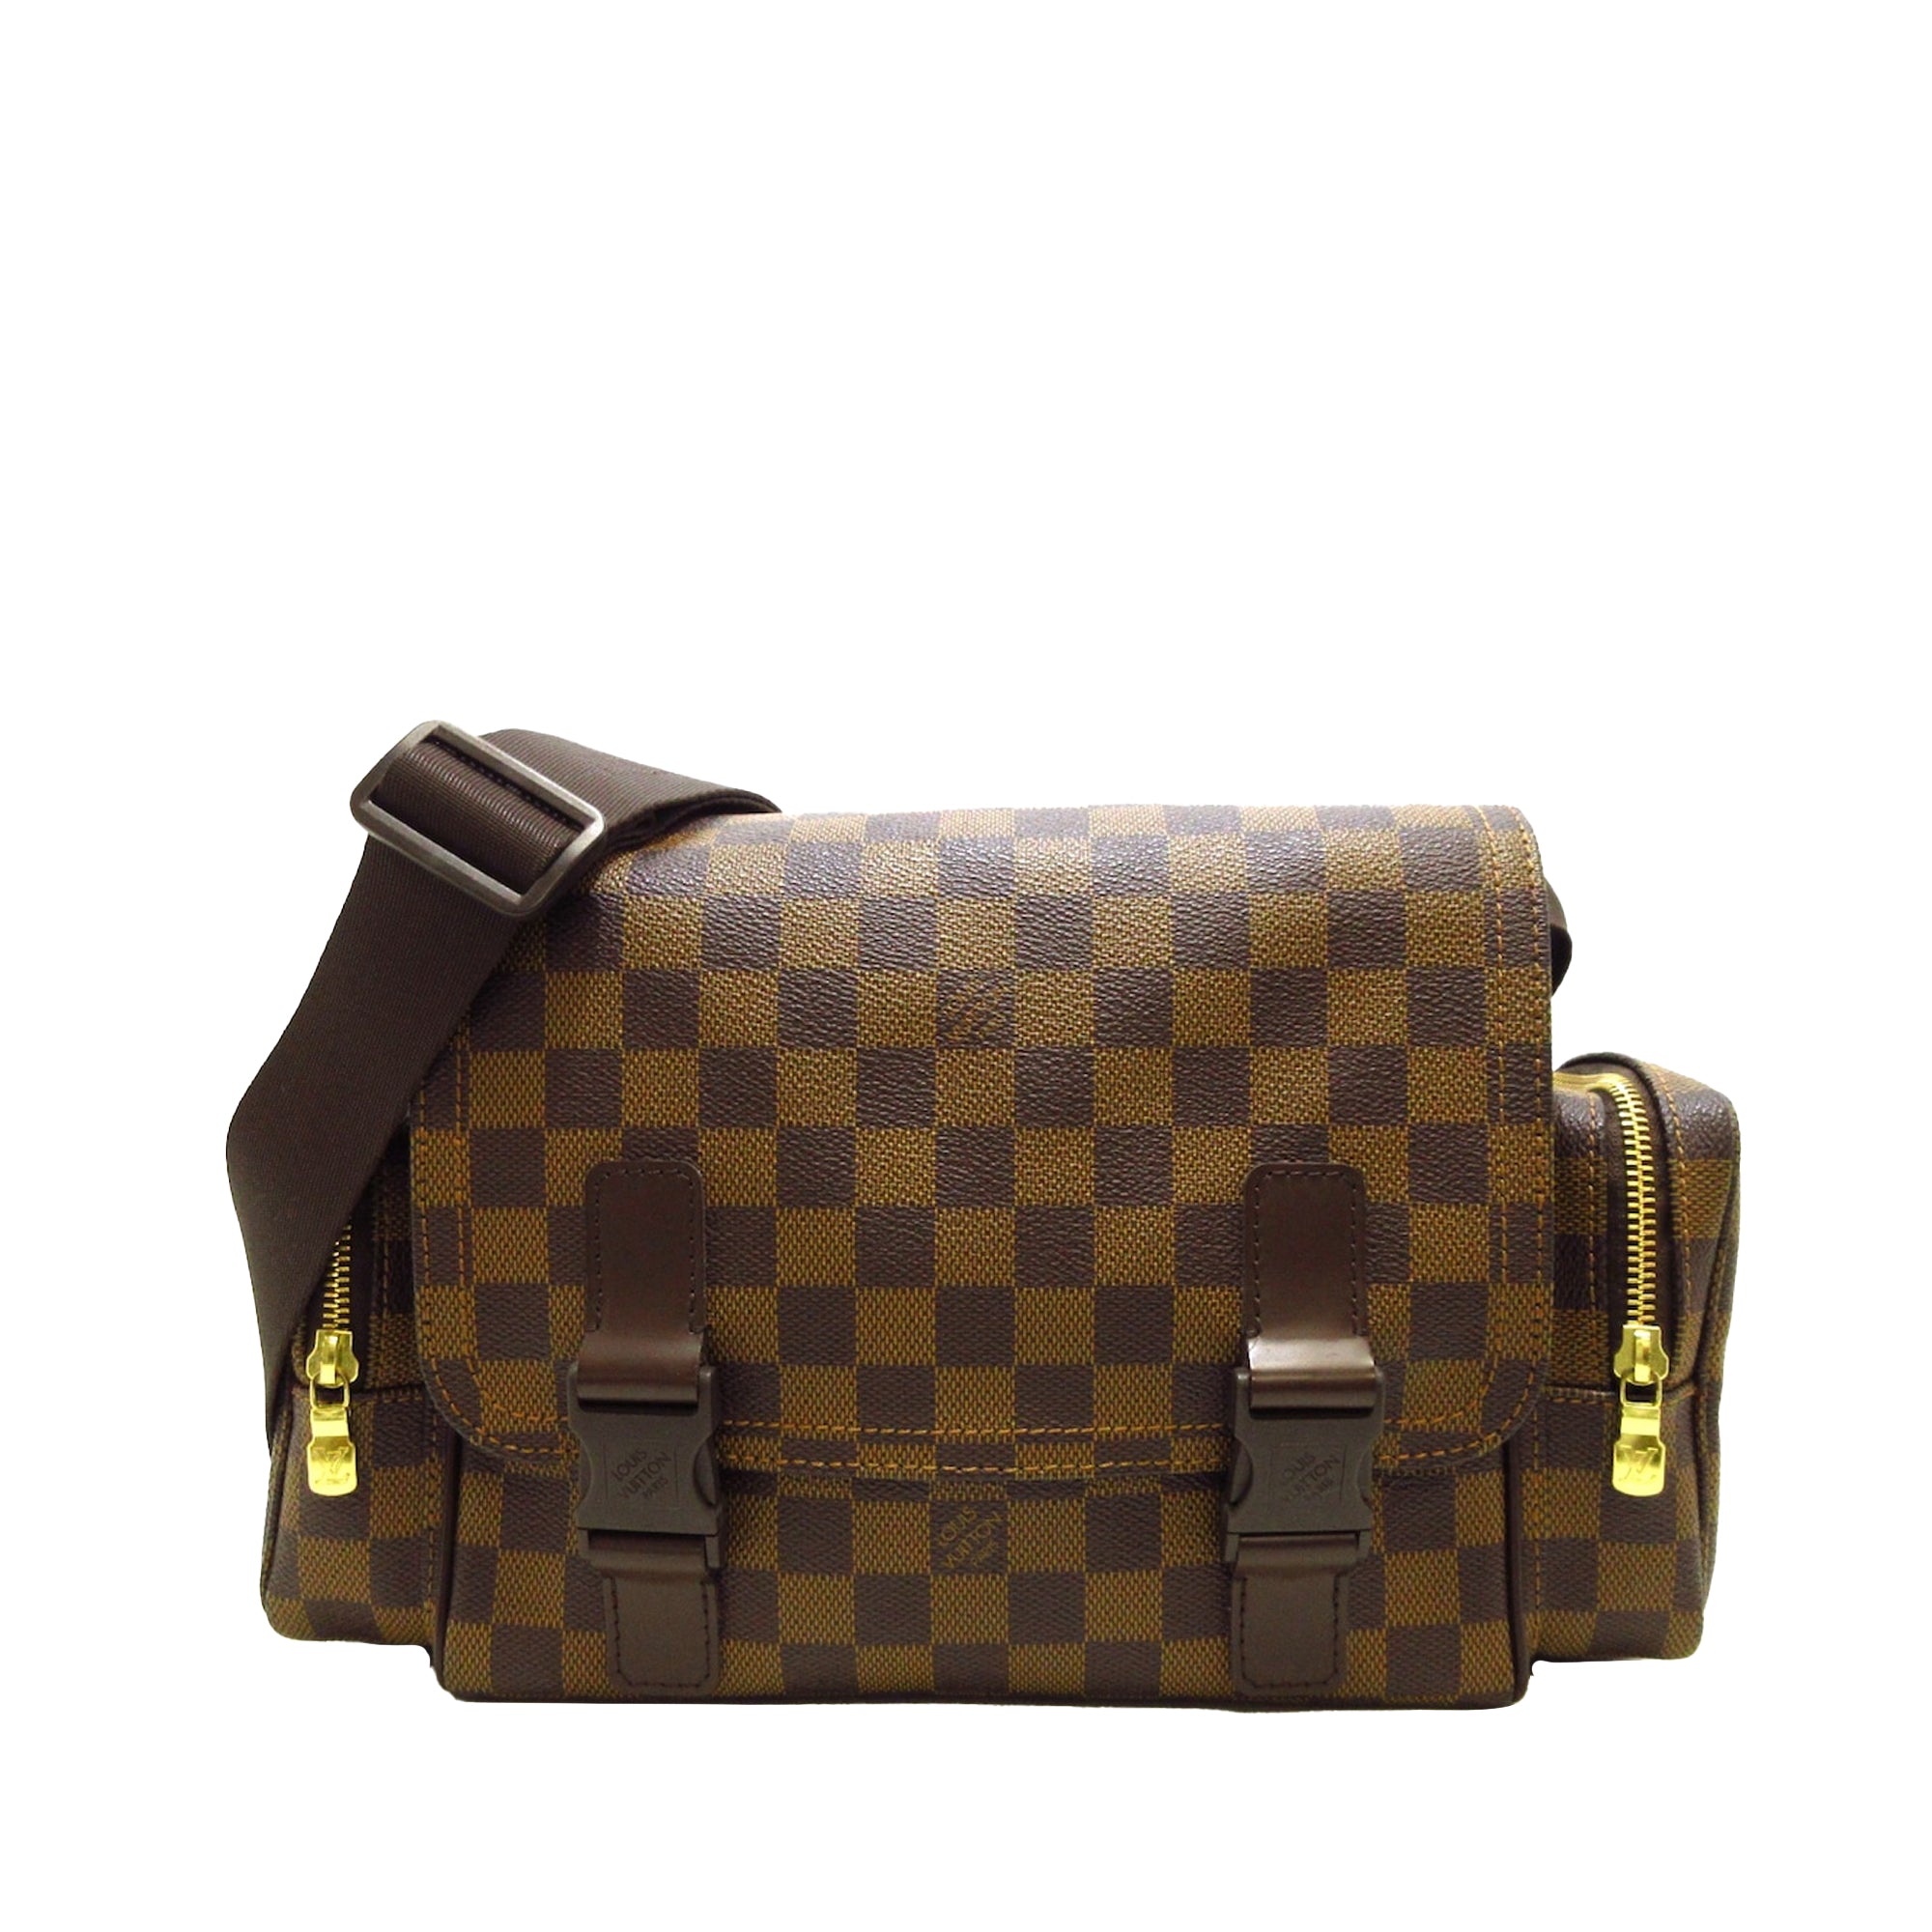 Shop authentic Louis Vuitton Damier Ebene Melville Waist Bag at